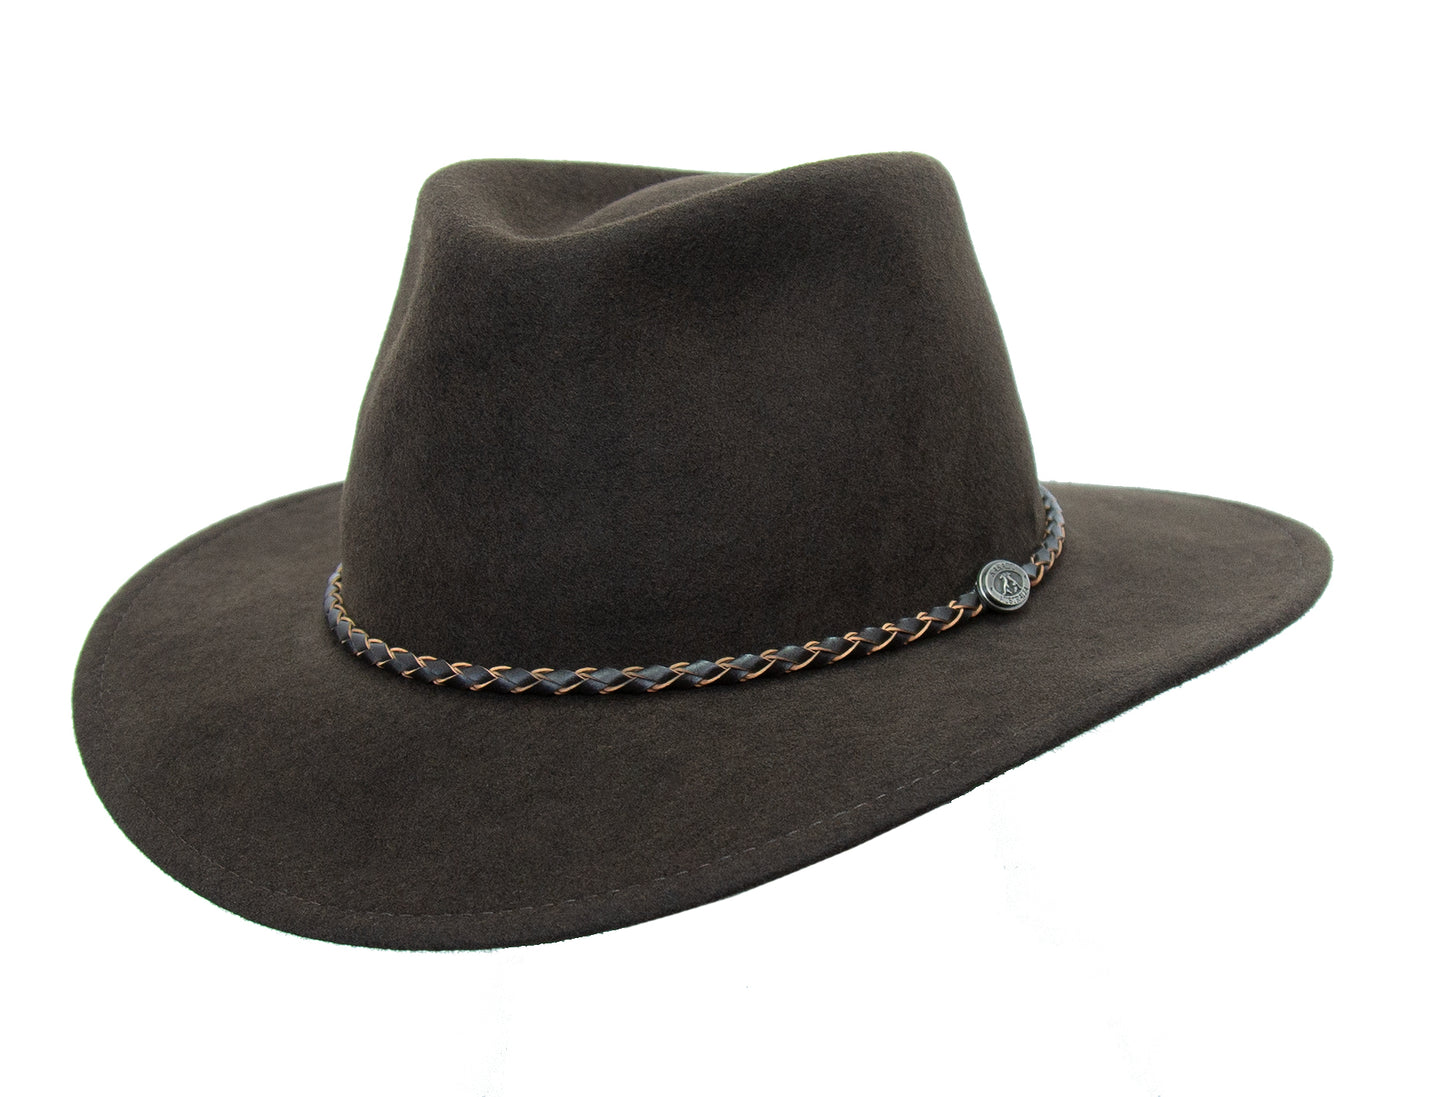 knautschbarer Wollfilzhut für Damen und Herren mit geflochtenem Leder-Hutband